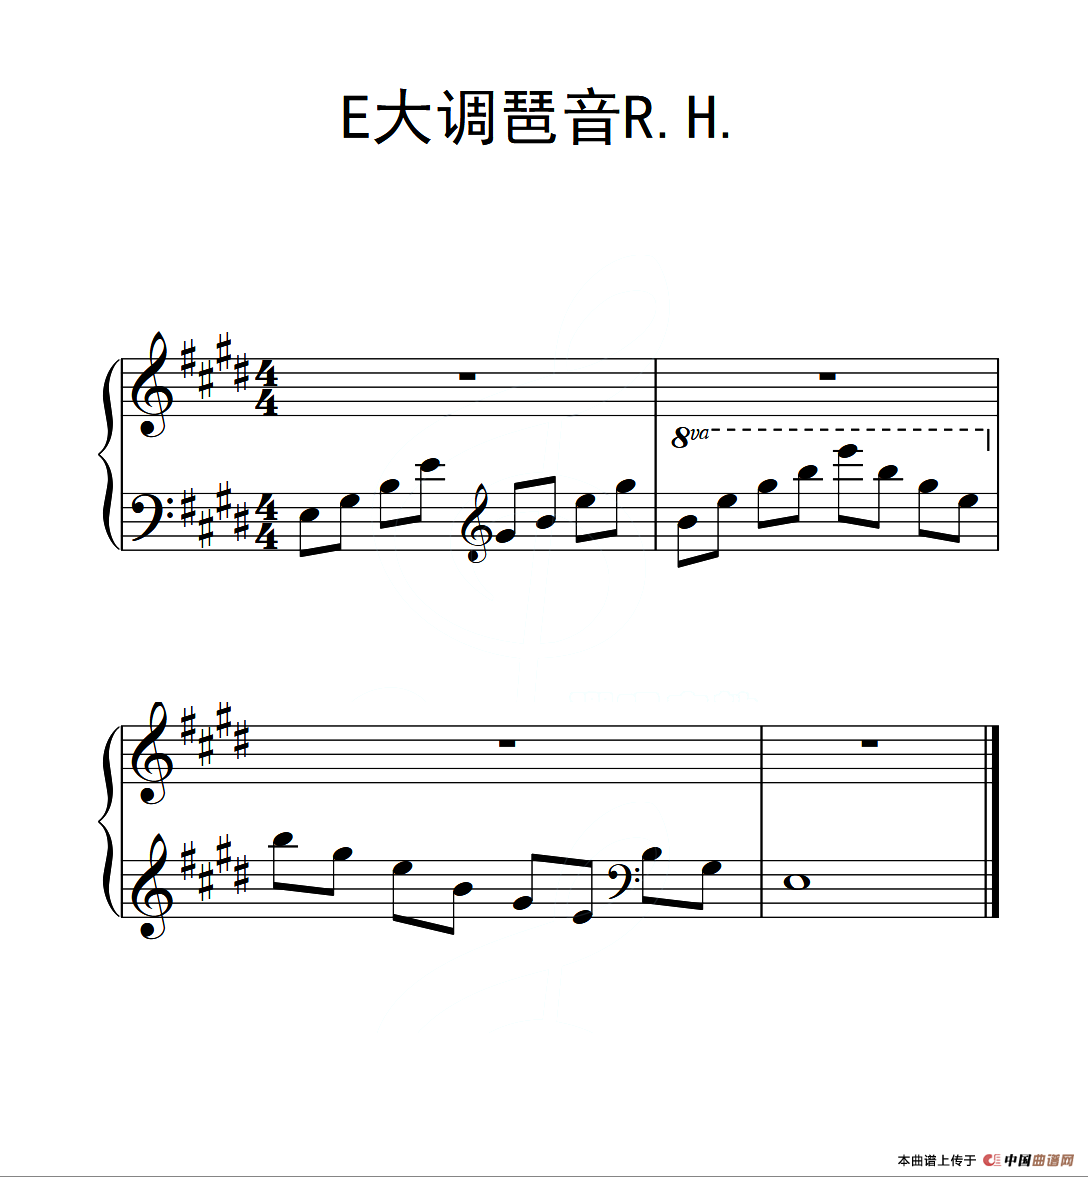 第三级 E大调琶音R H（中国音乐学院钢琴考级作品